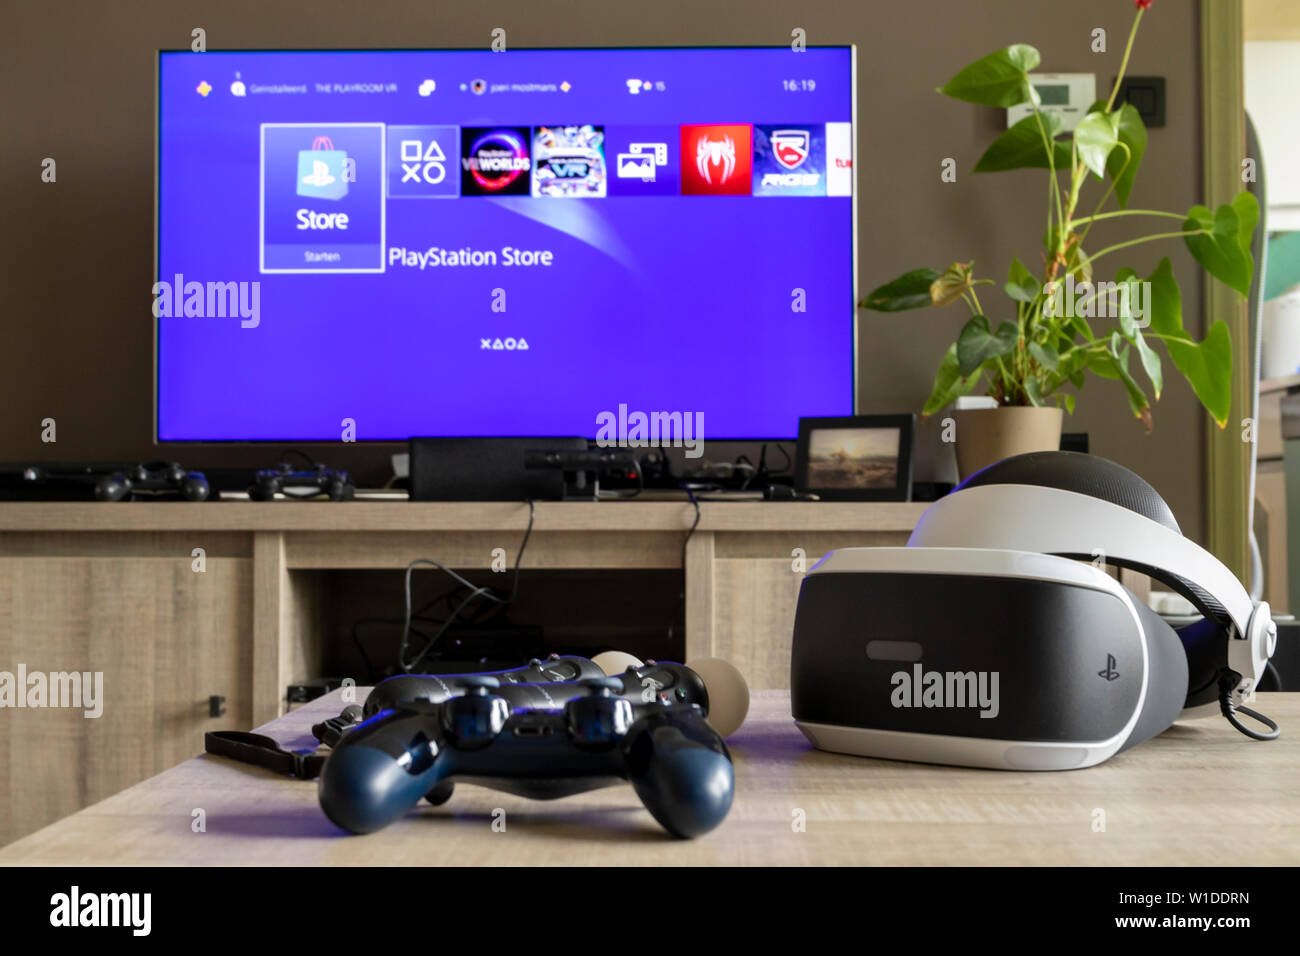 Eine playstation VR-Headset an einem hölzernen Tisch zusammen mit einer PS4-Steuerung  und einige Playstation Move Controller. Im Hintergrund gibt es einen  Fernseher Stockfotografie - Alamy